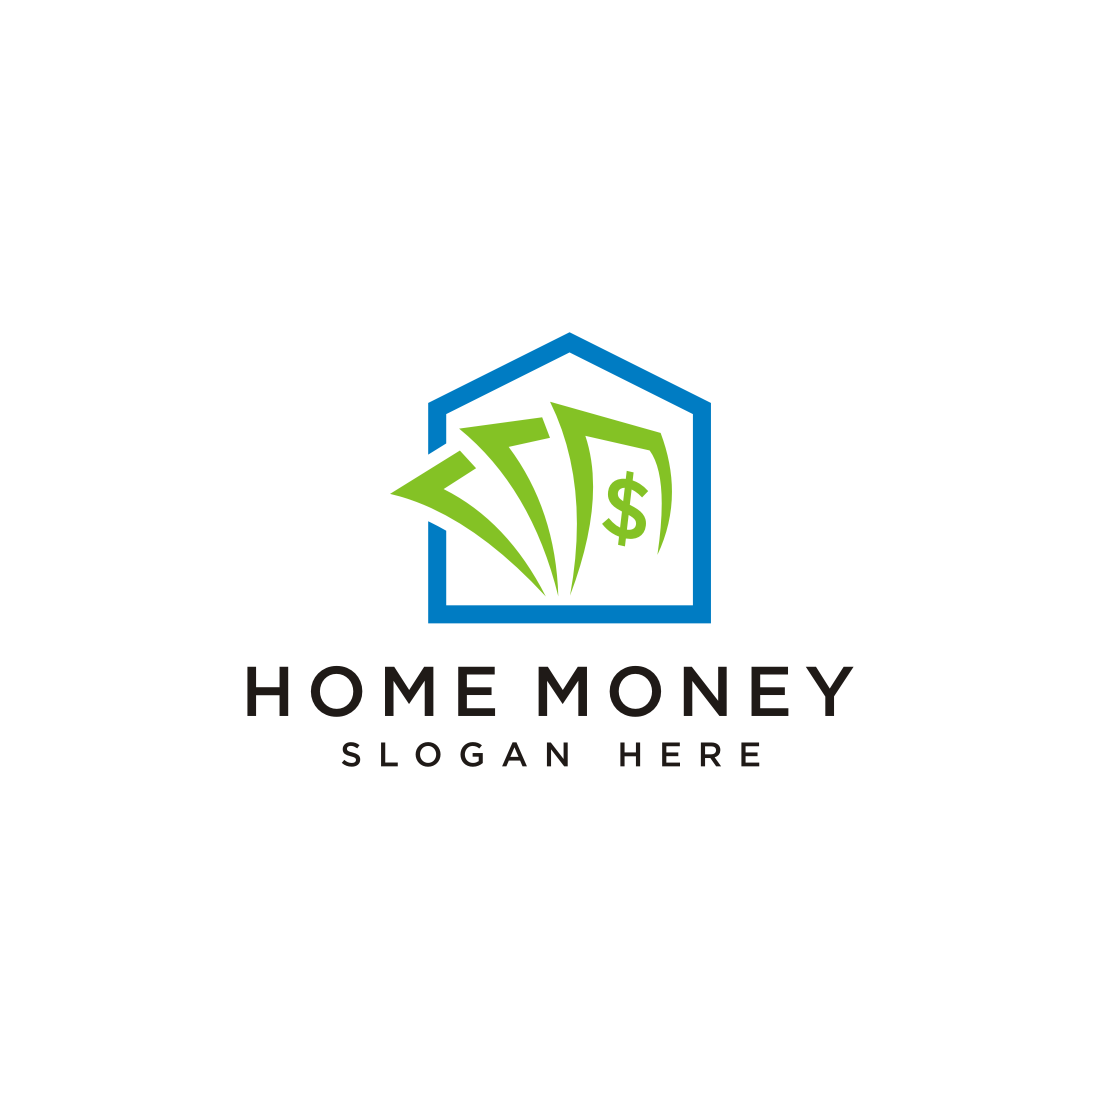 Home Money Logo Vector Design preview image.